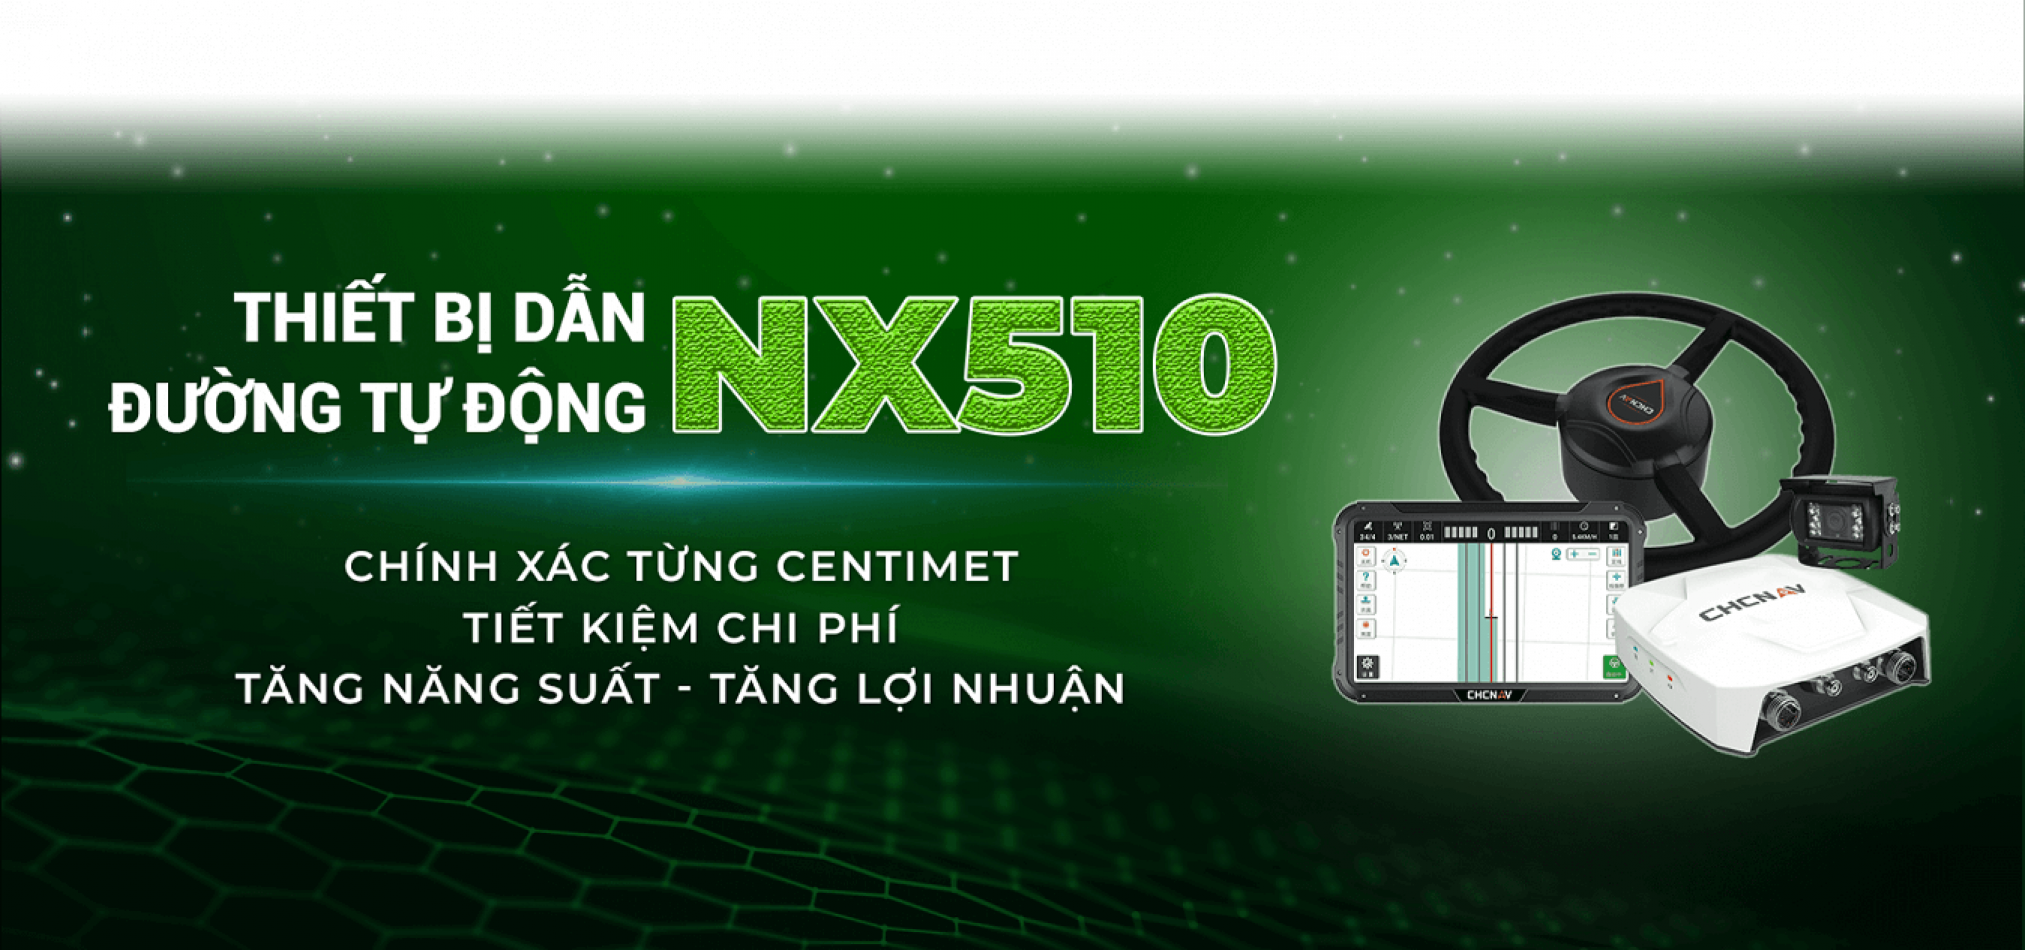 Thiết bị dẫn đường tự động NX510